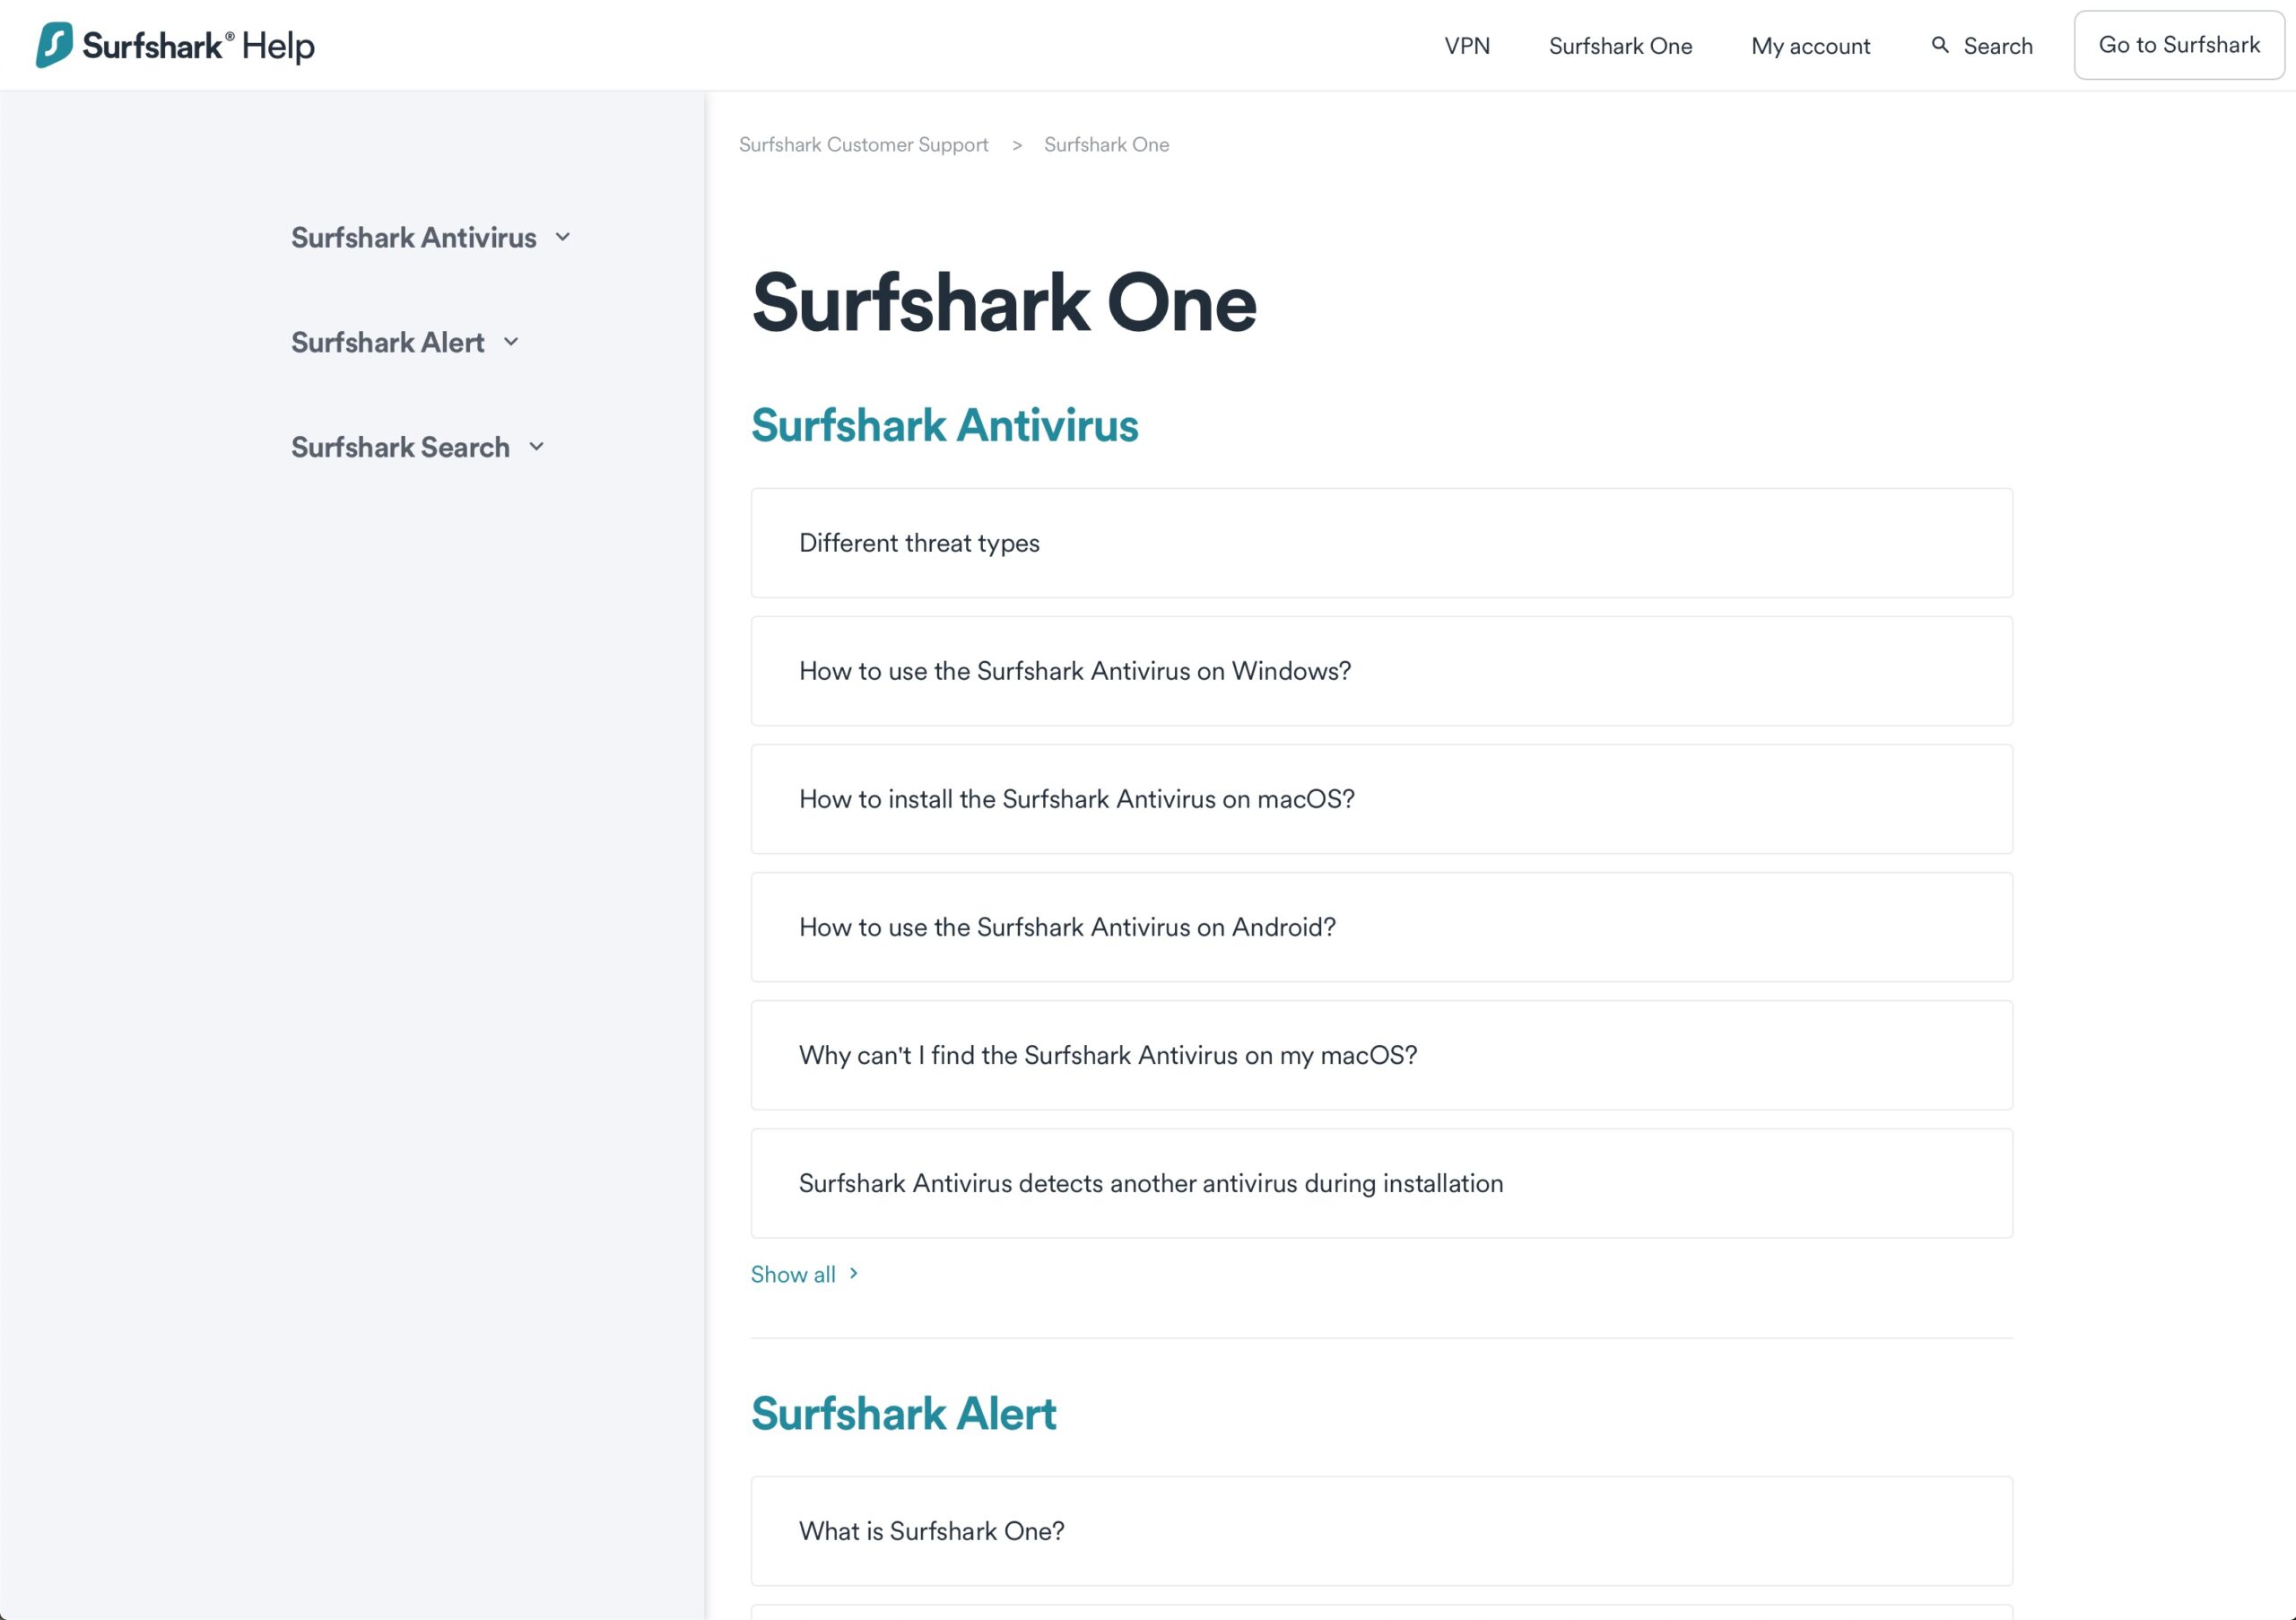 Surfshark One - FAQ